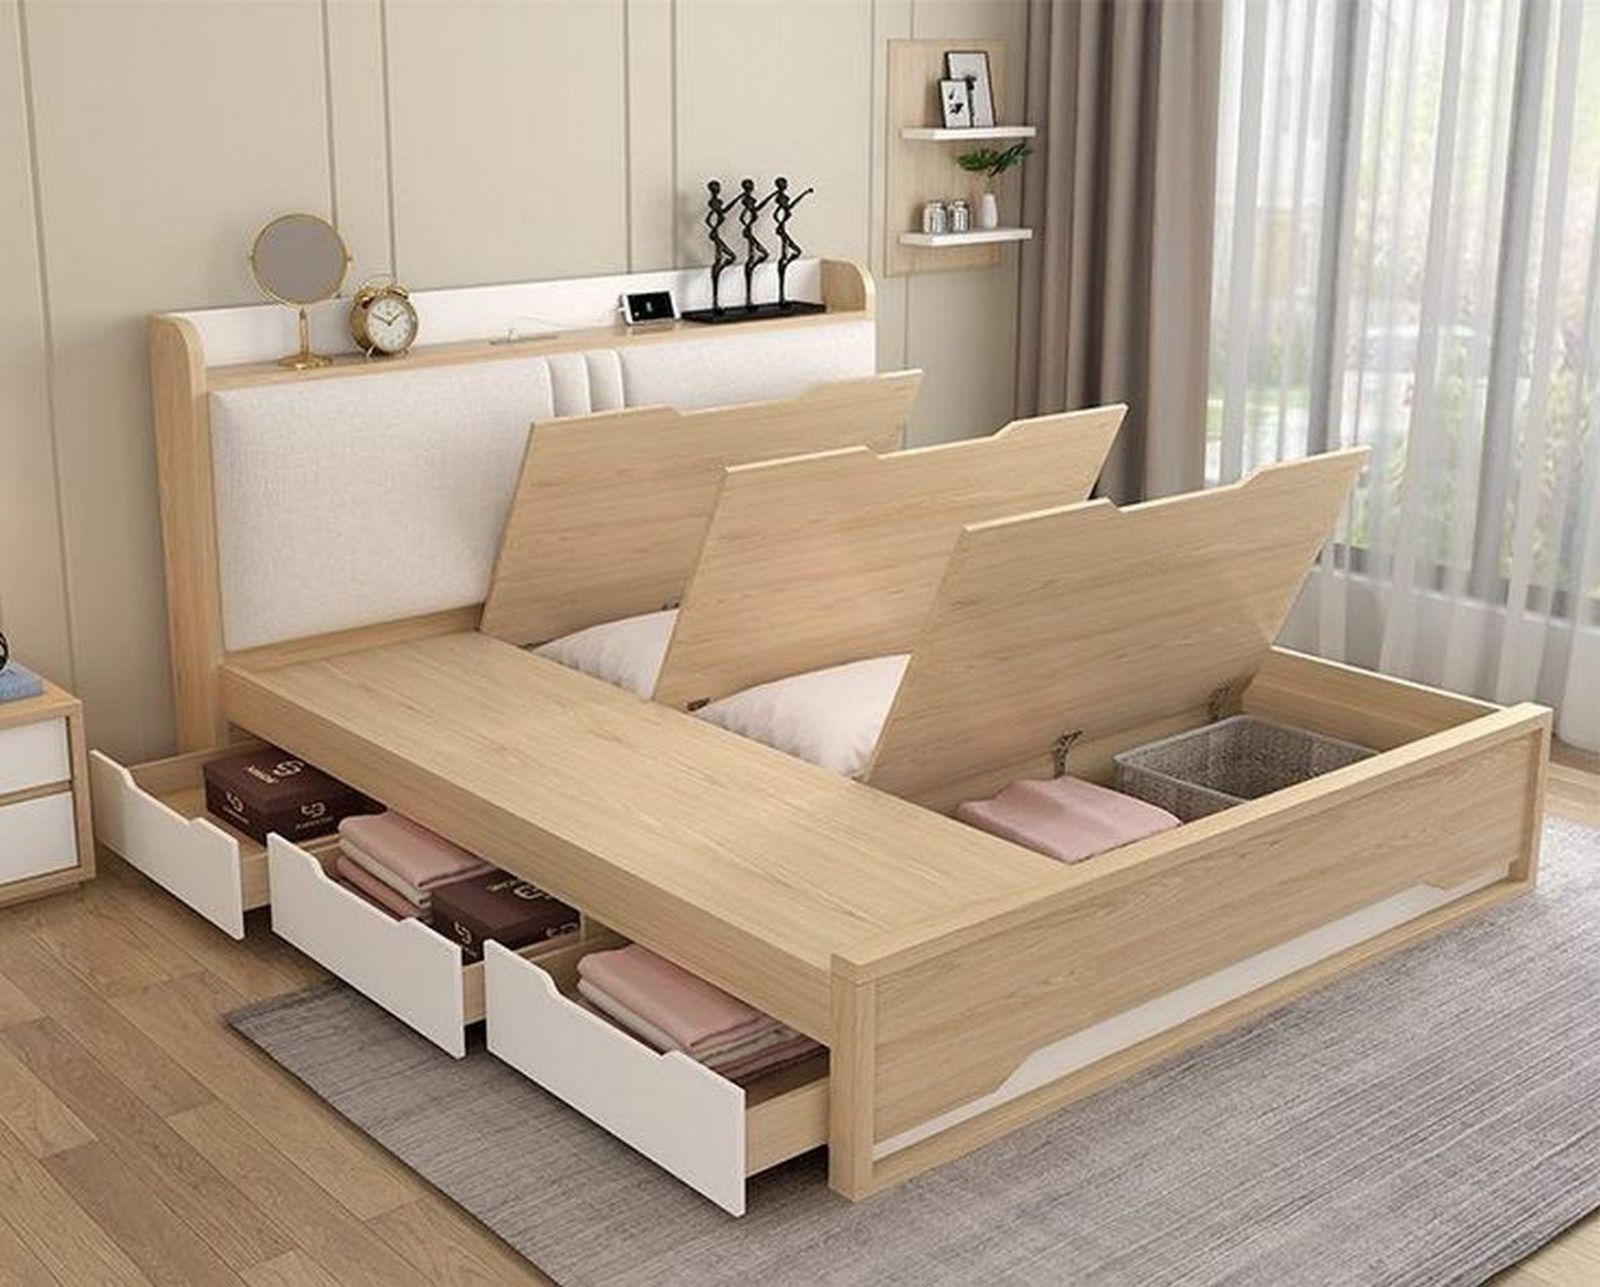 Thiết kế phòng ngủ sử dụng nội thất nhỏ gọn, đa năng tích hợp với ghế sofa và kệ sách hiện đại